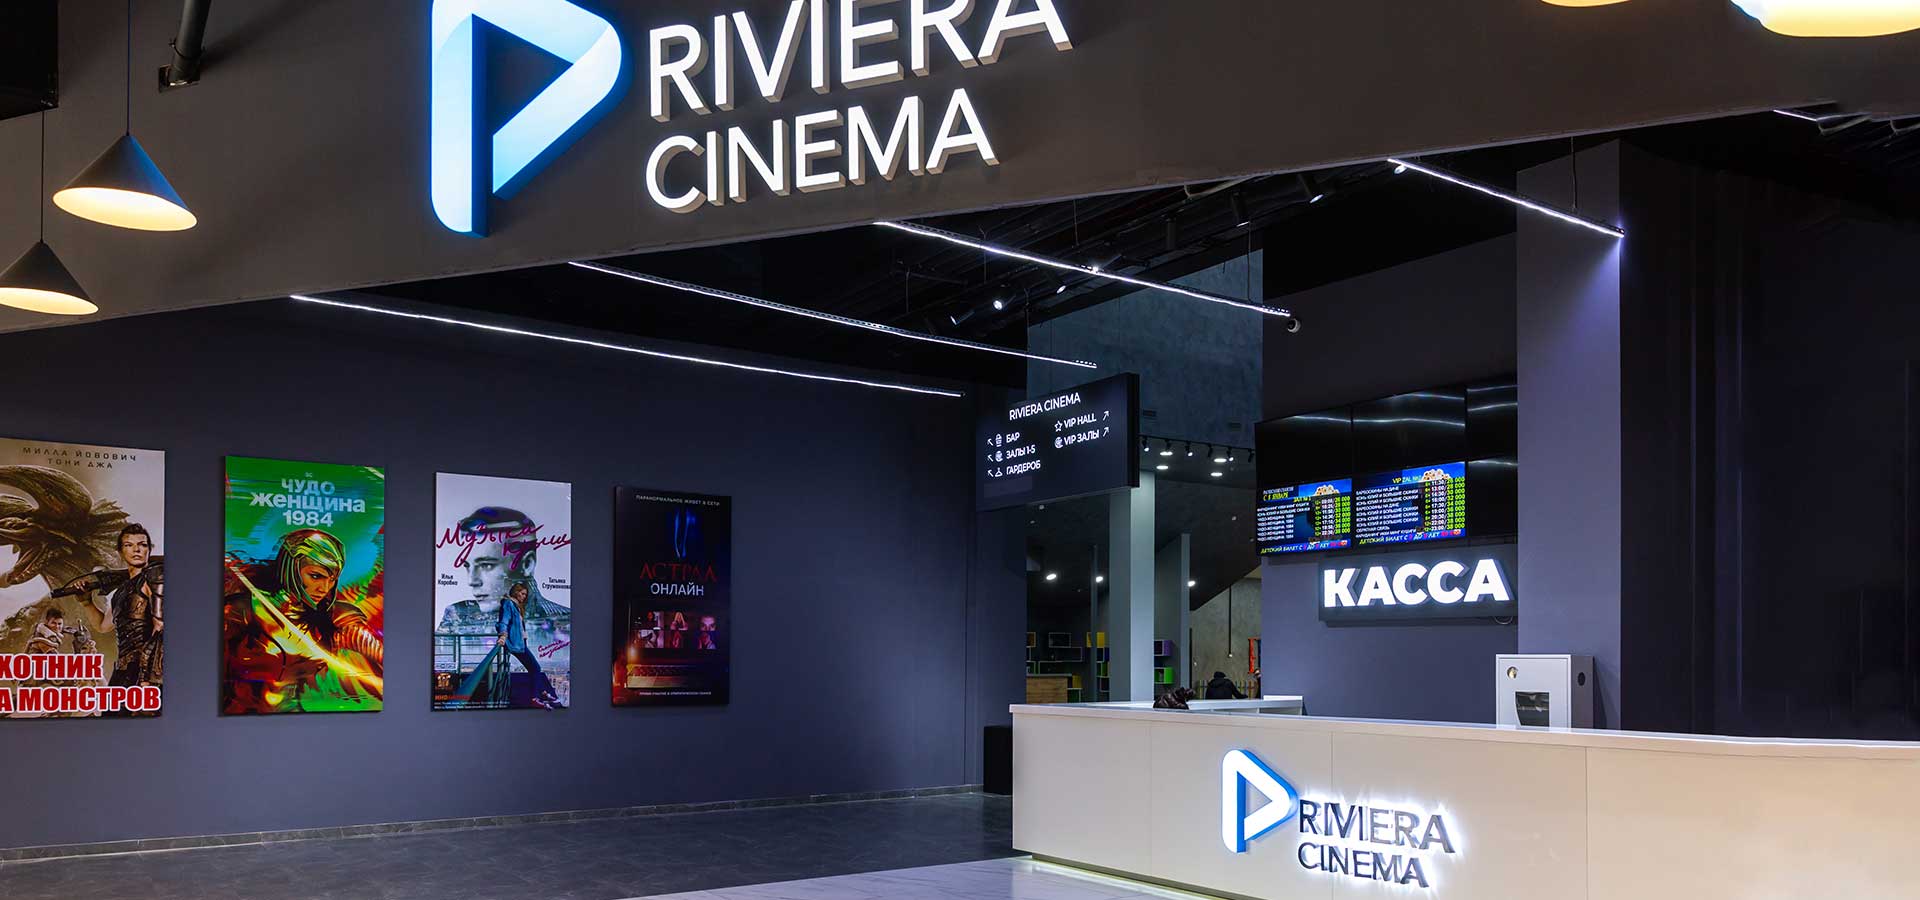 Кинотеатр «Riviera Cinema, зал №4» в Ташкенте - расписание фильмов, афиша кино, адрес, телефоны и другие контакты